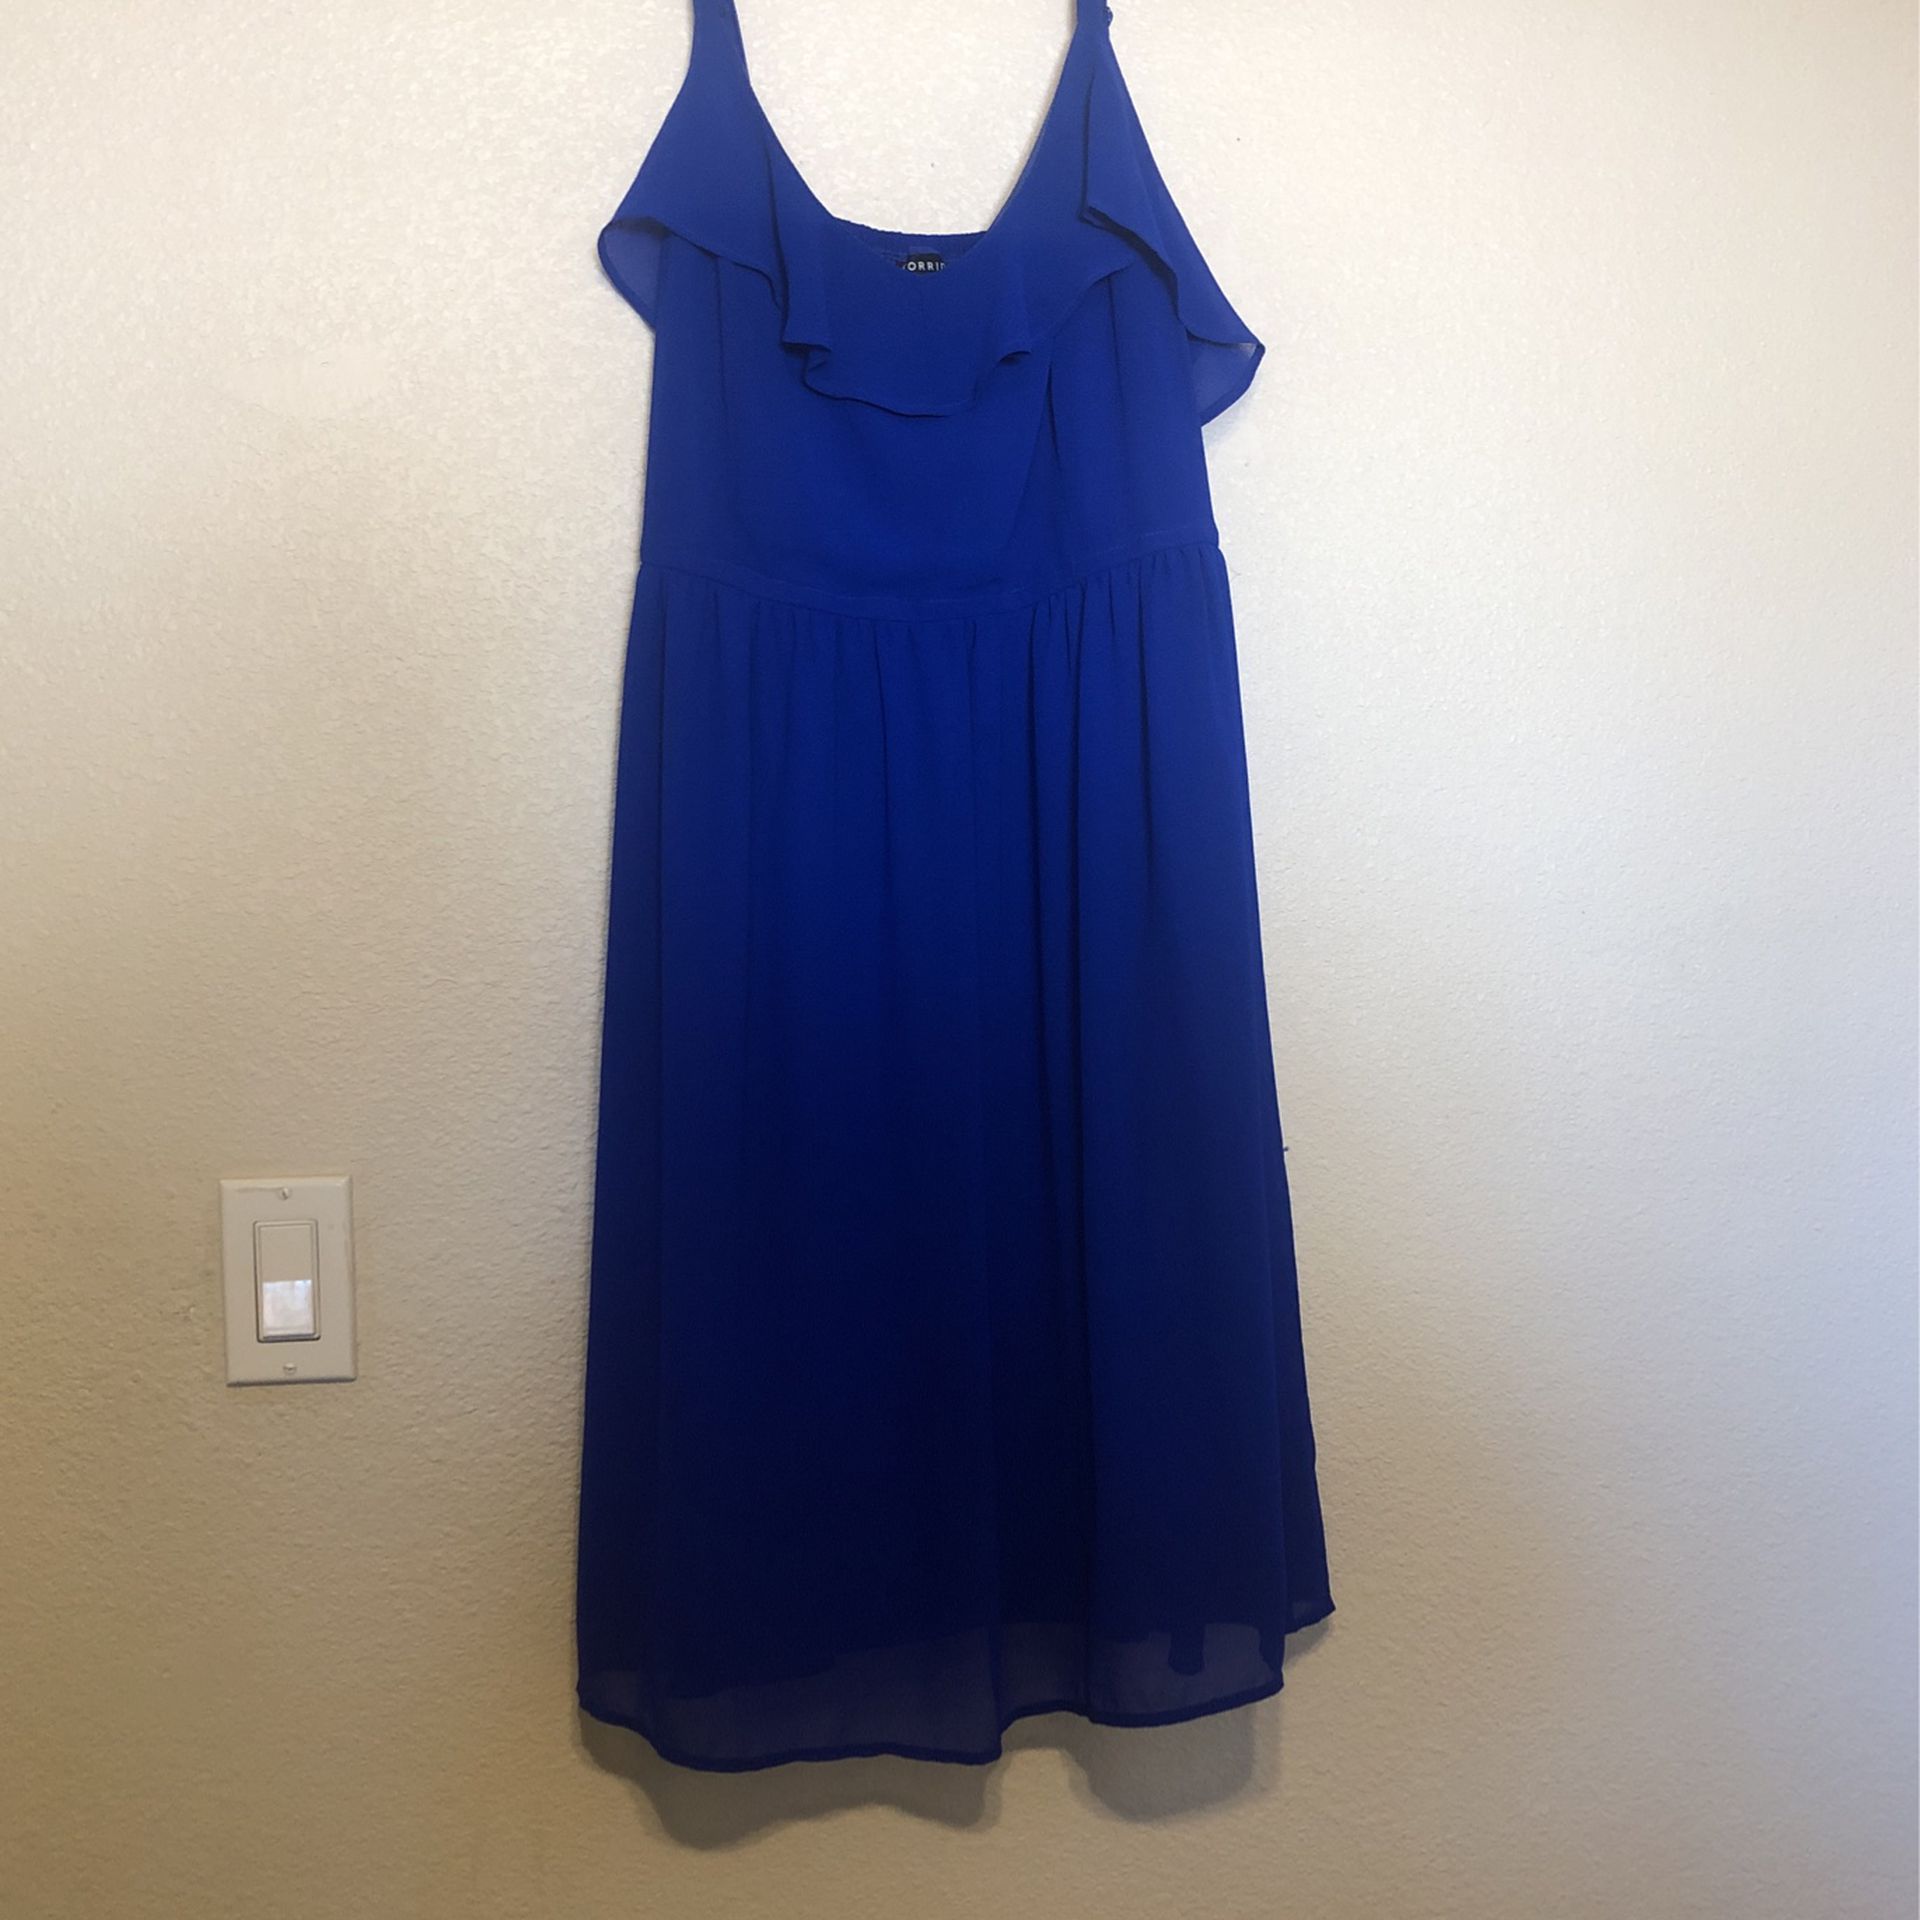 Torrid Blue Dress Size 2 for Sale in Phoenix, AZ - OfferUp